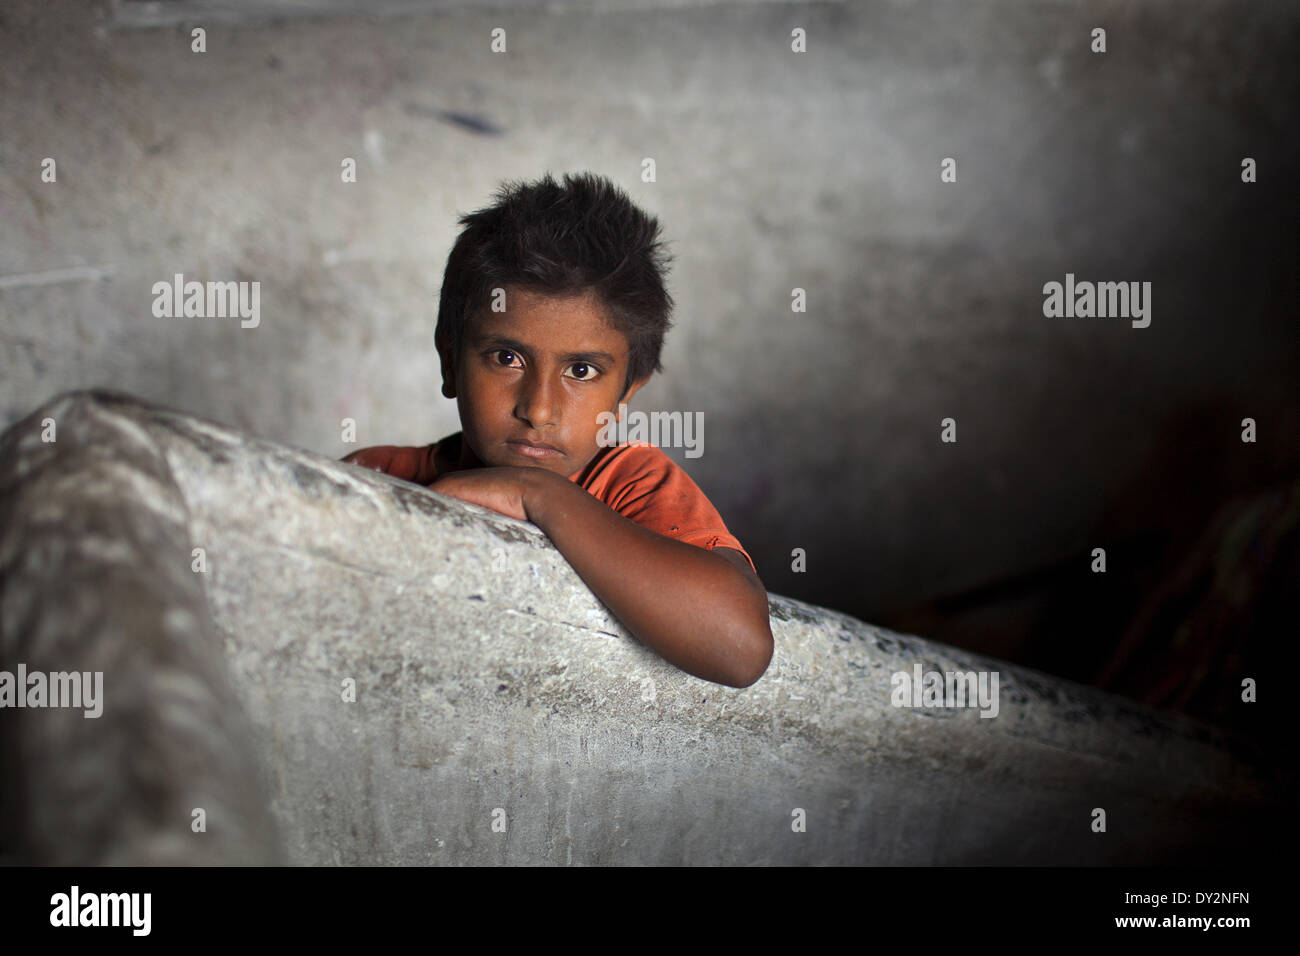 Dhaka, Bangladesch. 4. April 2014. SHOHAG arbeitet bei einer manuellen Seifenfabrik in Dhaka, Bangladesch. Kinderarbeit ist kein neues Thema in Bangladesch. Armut führt hier viele Familien ihre Kinder zu arbeiten, oft in gefährlichen und verschmutzten Umgebungen wie Mülldeponien, Baustellen, Ziegelherstellung Felder oder verarbeitenden Fabriken schicken. Nach Angaben von UNICEF lange Arbeitszeiten und schlechten Arbeitsbedingungen nicht nur verhindern, dass Kinder zur Schule, sondern auch erheblich beeinträchtigen können, ihre körperliche und geistige Gesundheit. Fabrikanten bevorzugen, Kinder zu beschäftigen, da sie sie weniger und Abl bezahlen könnte Stockfoto